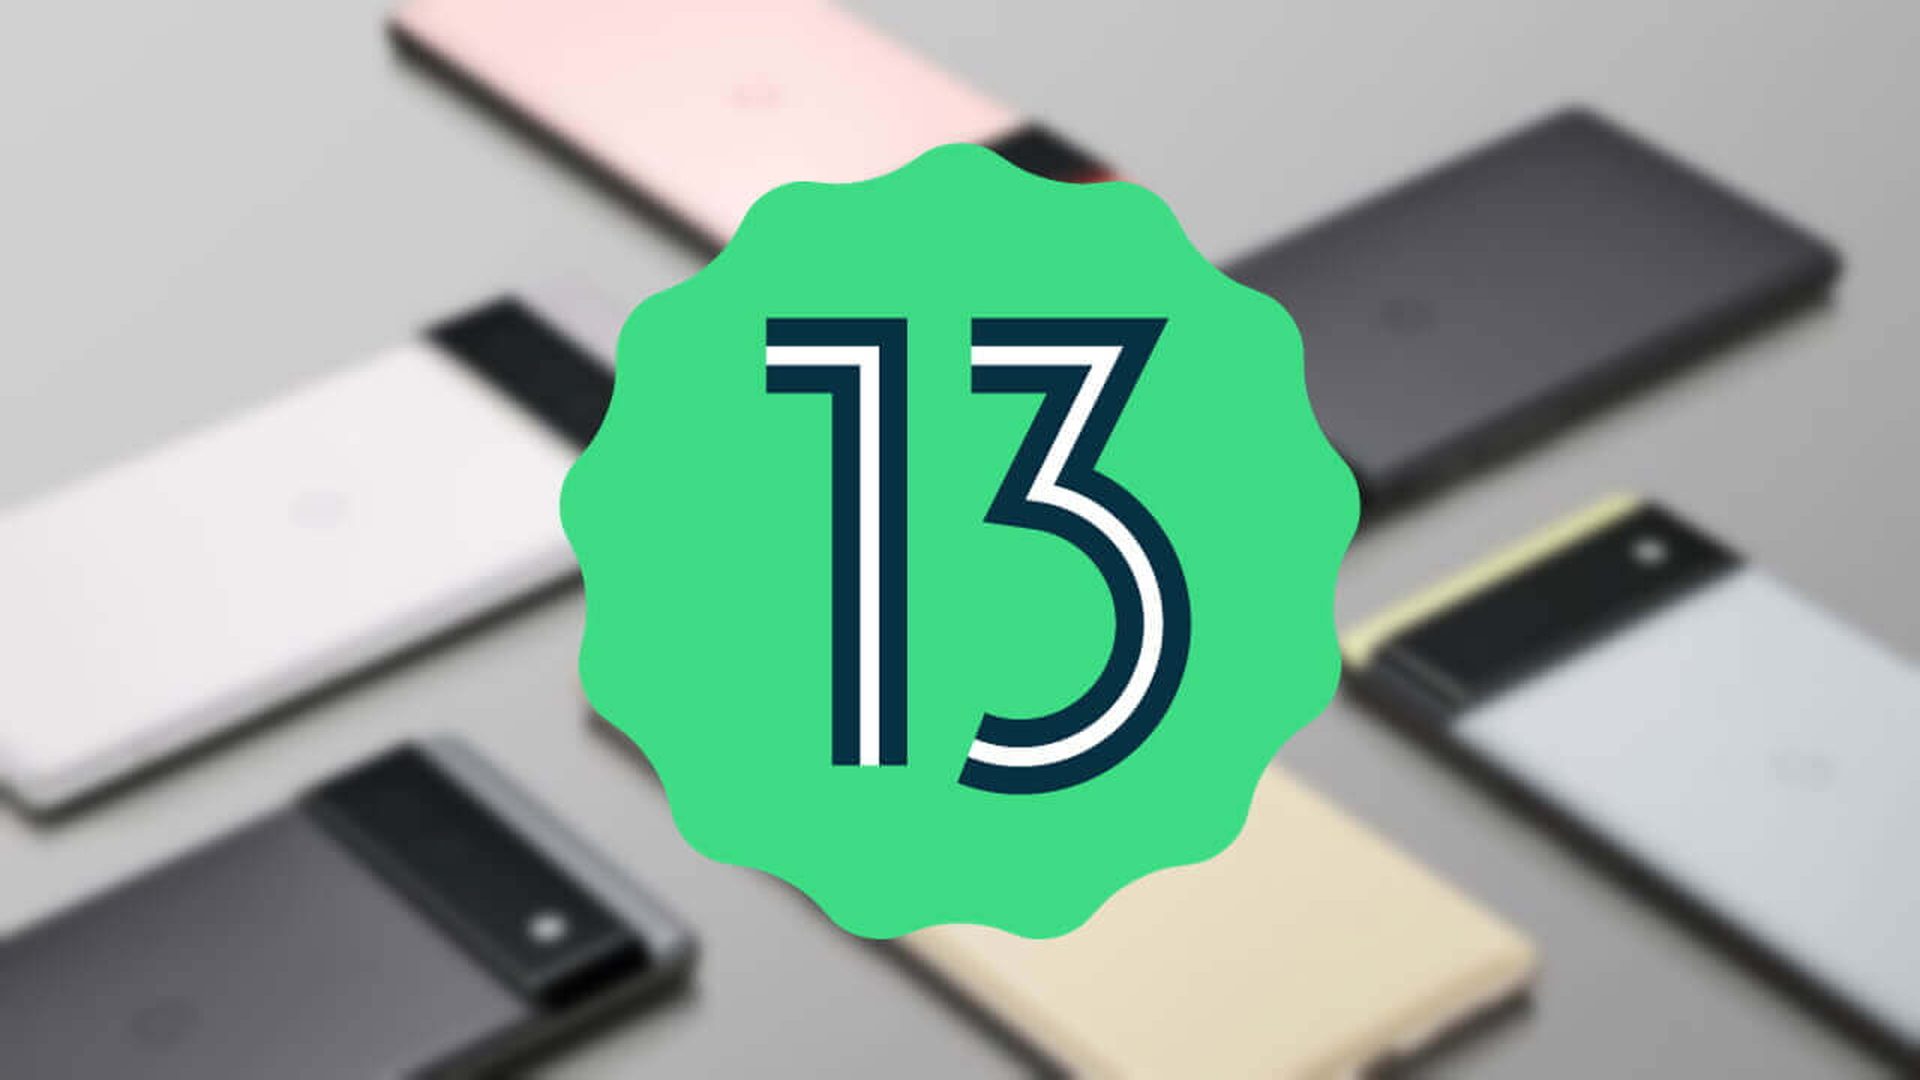 Android 13 beta çıktı: Yeni özellikler, desteklenen cihazlar ve daha fazlası